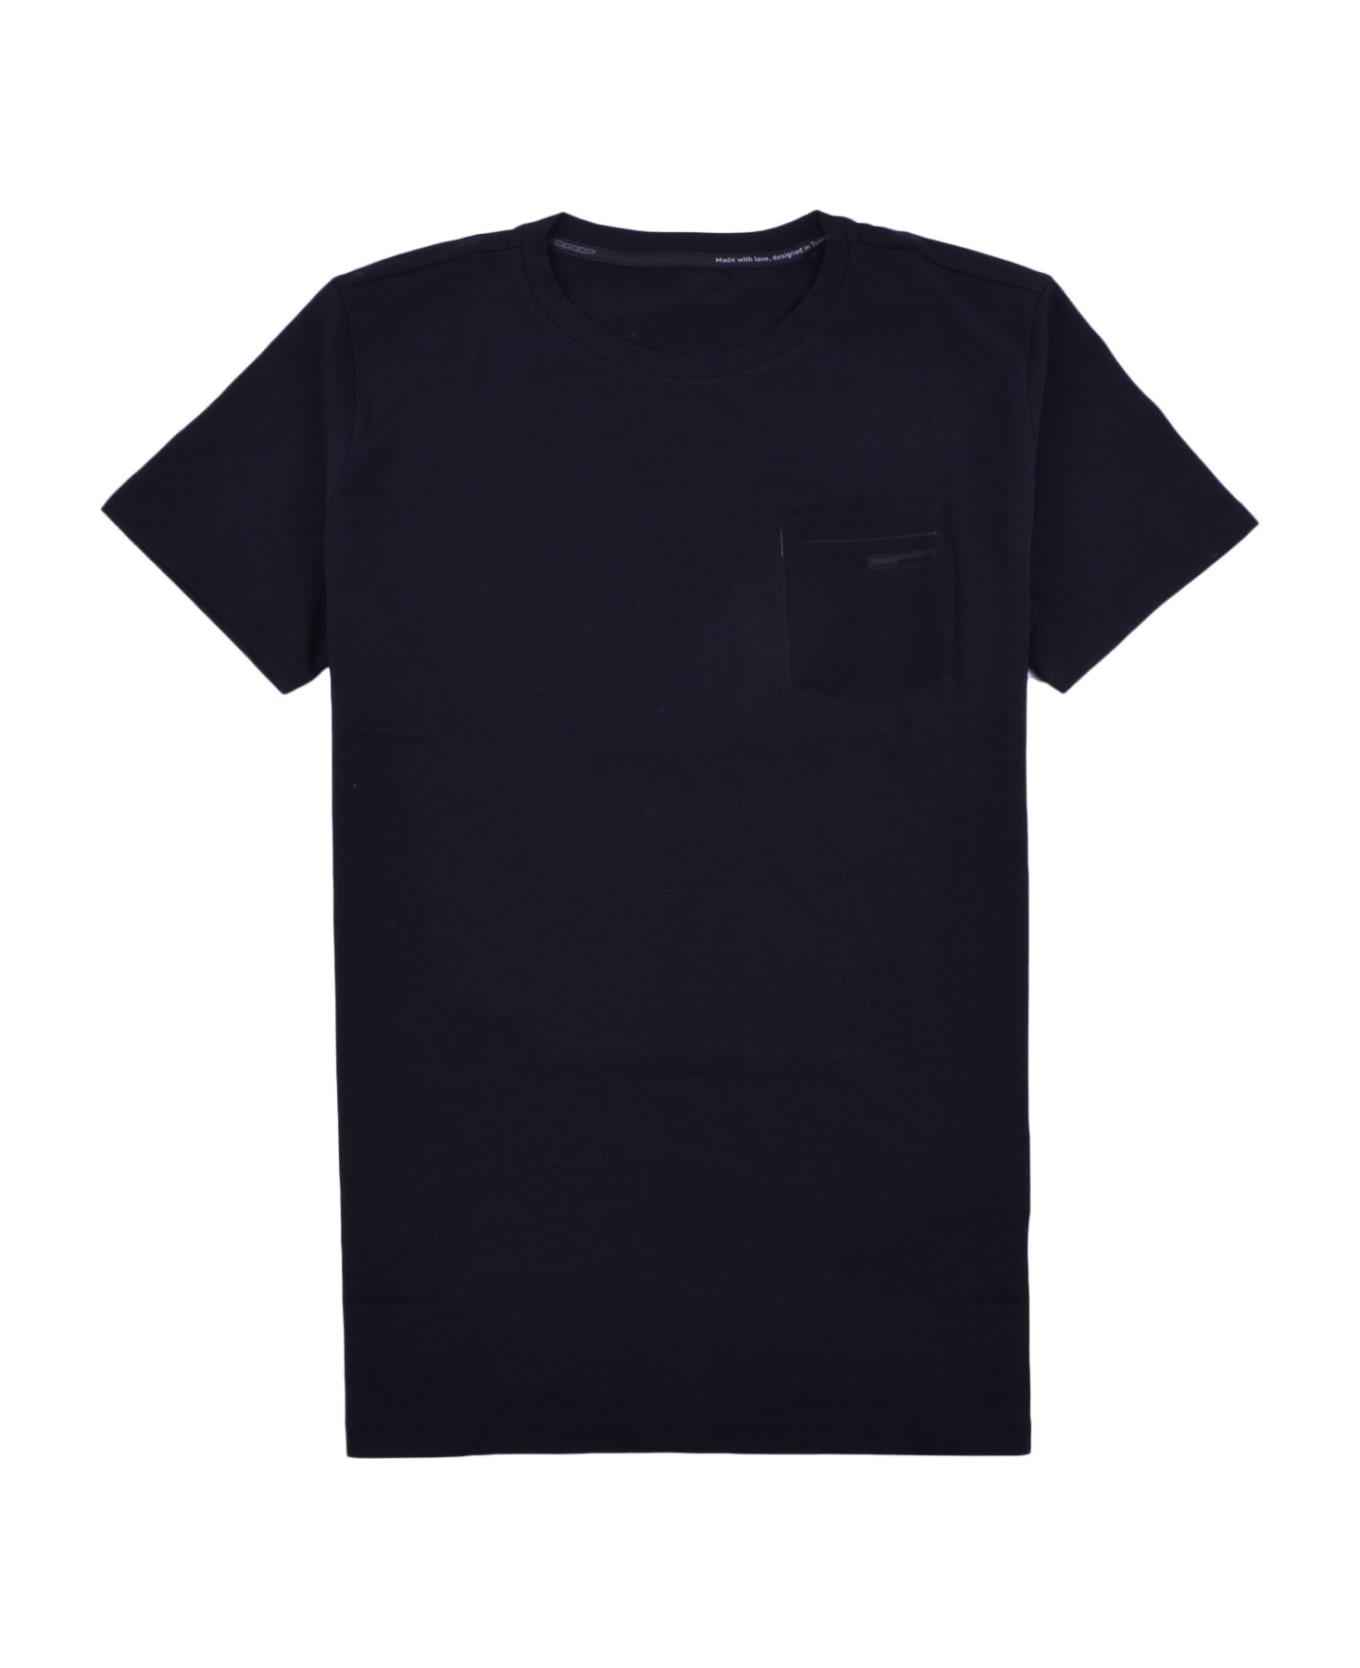 RRD - Roberto Ricci Design T-shirt - Black シャツ